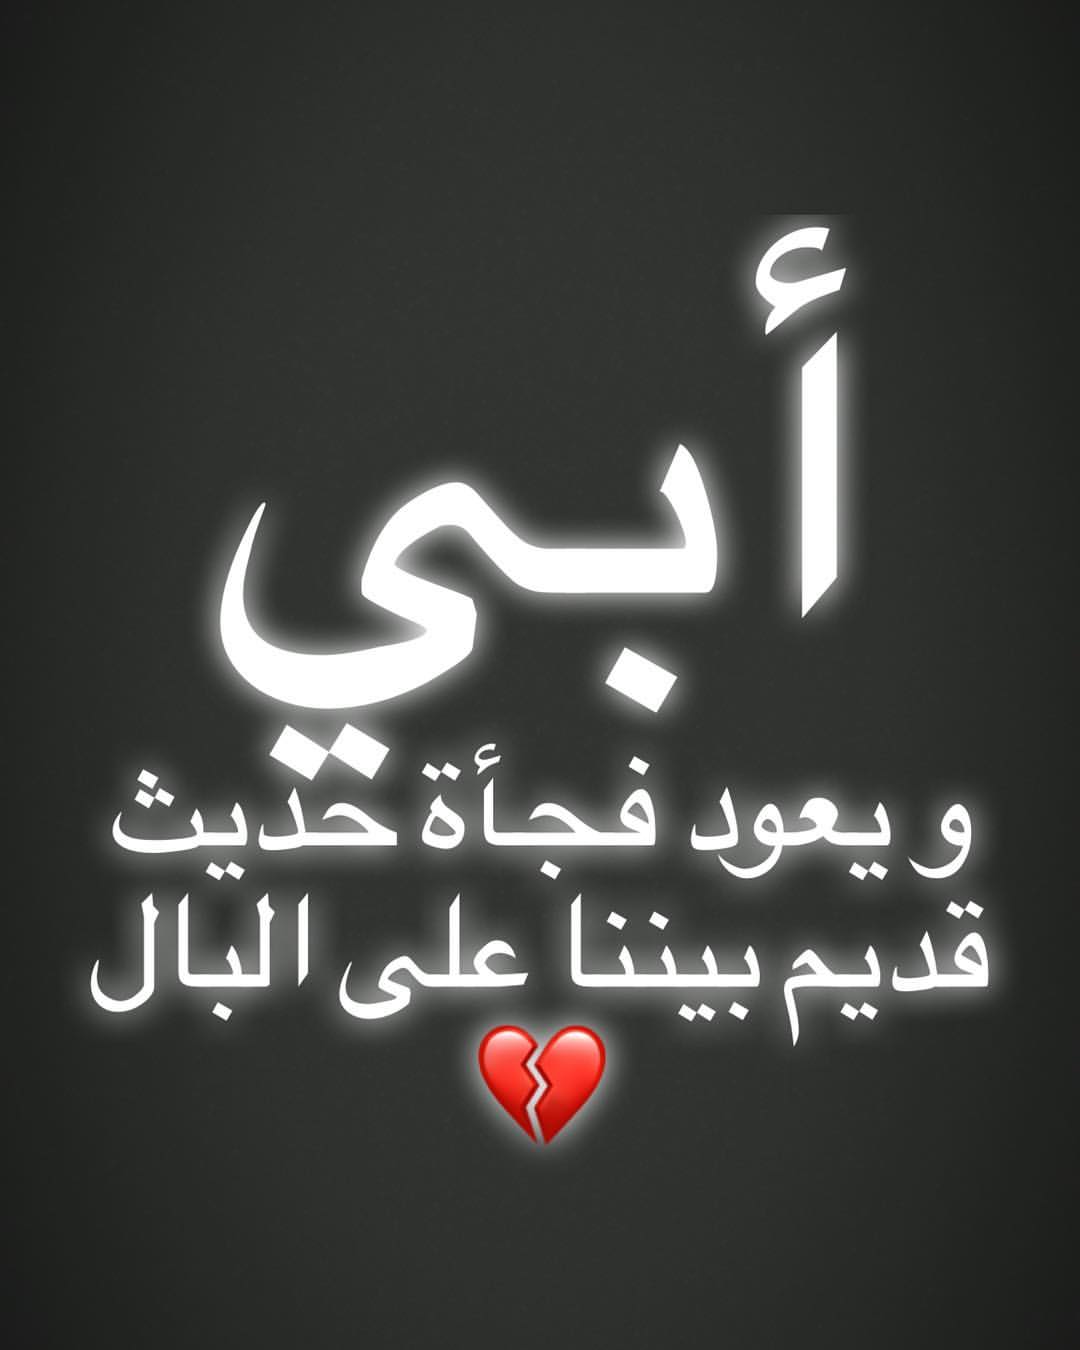 اغنية الحياة أمل مع كلمات الاغنية بالعربي